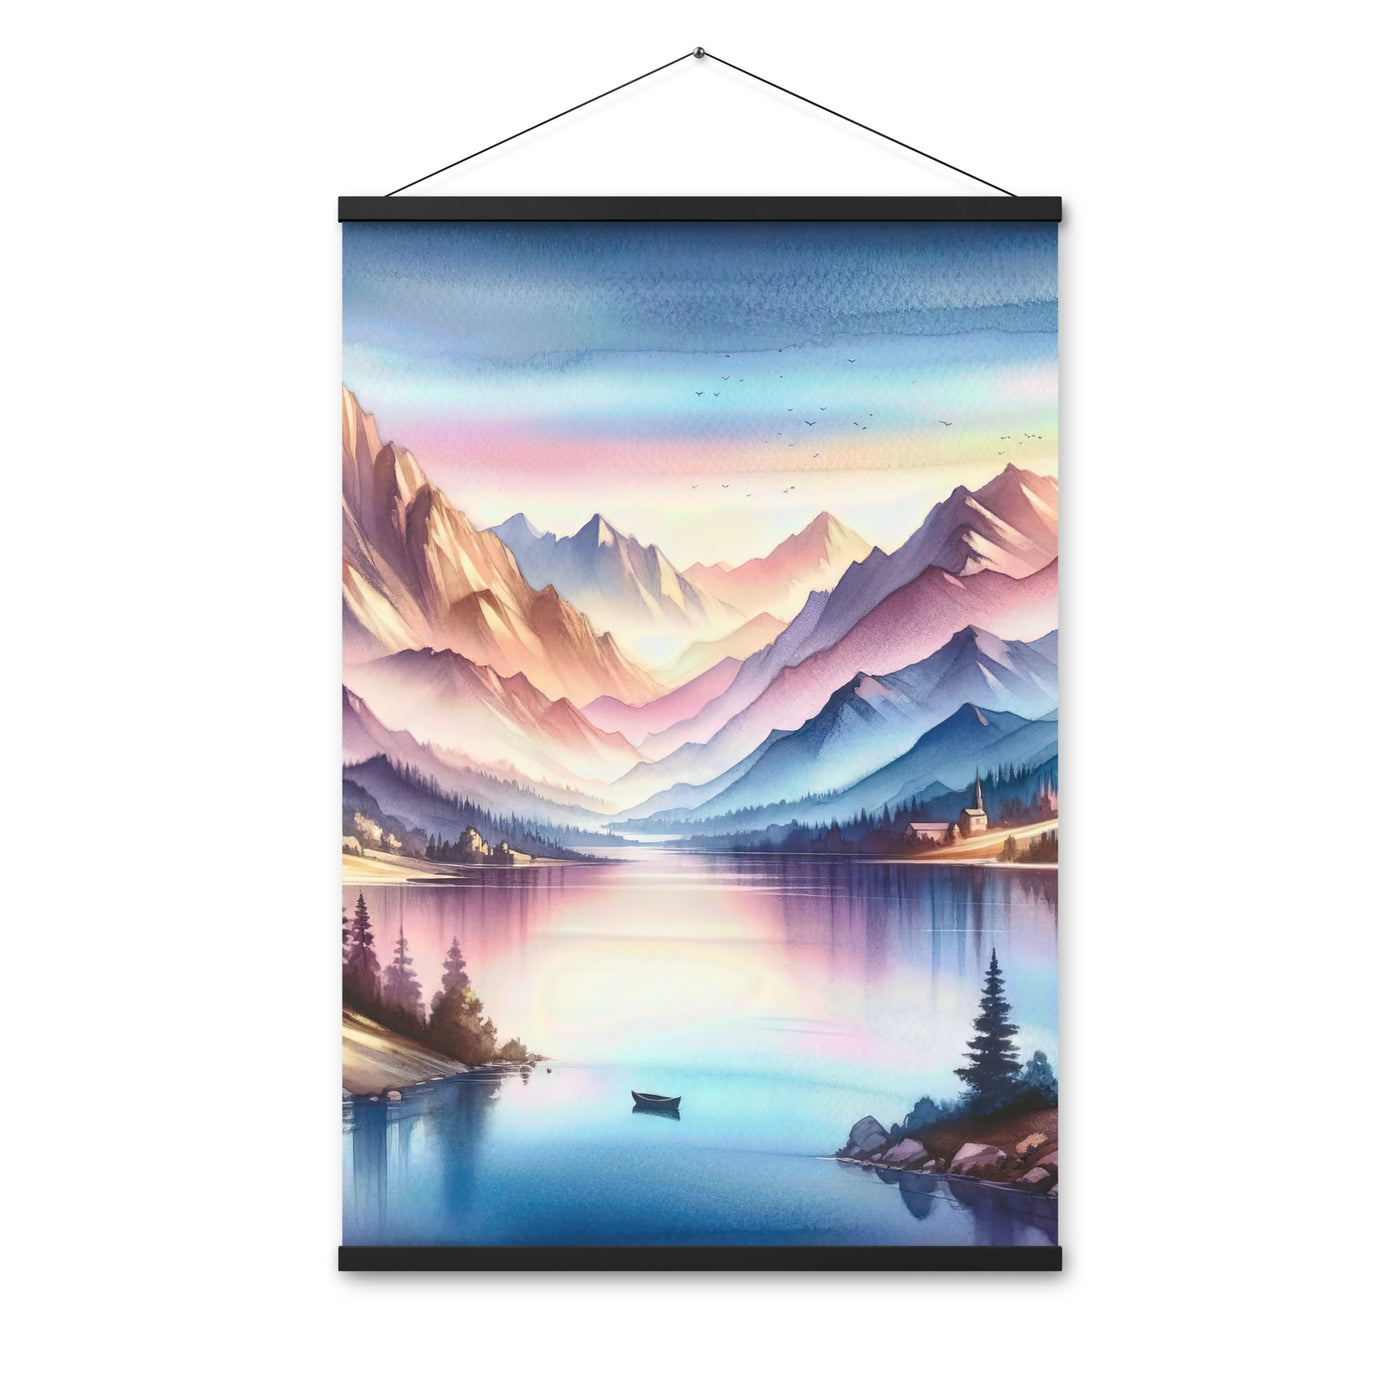 Aquarell einer Dämmerung in den Alpen, Boot auf einem See in Pastell-Licht - Premium Poster mit Aufhängung berge xxx yyy zzz 61 x 91.4 cm